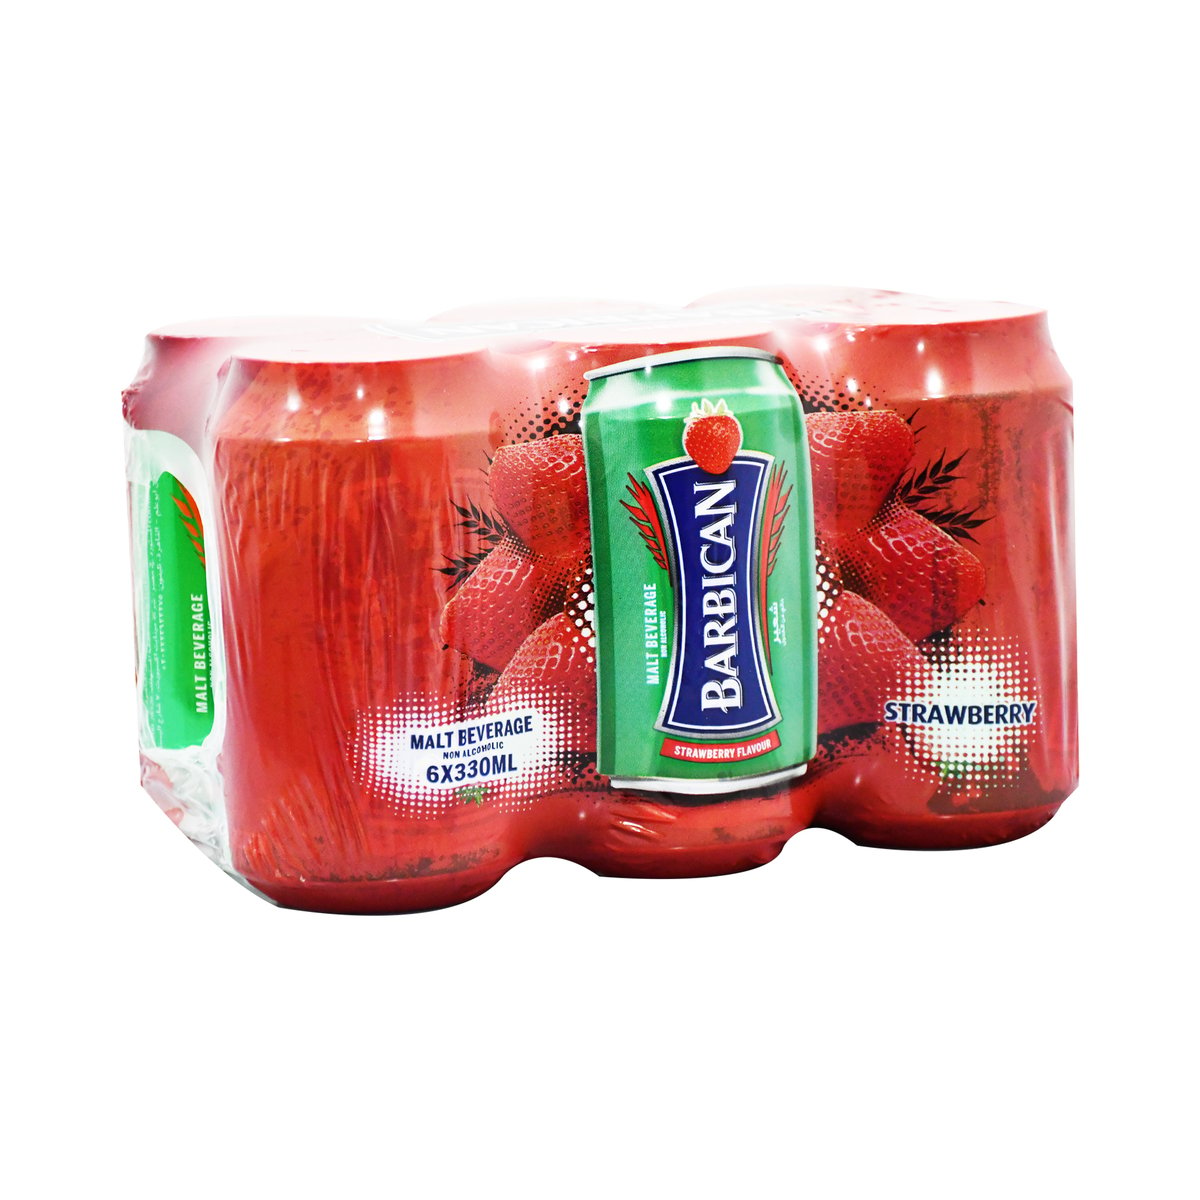 Barbican Strawberry Flavour Non Alcoholic Malt Beverage 6 x 330 ml